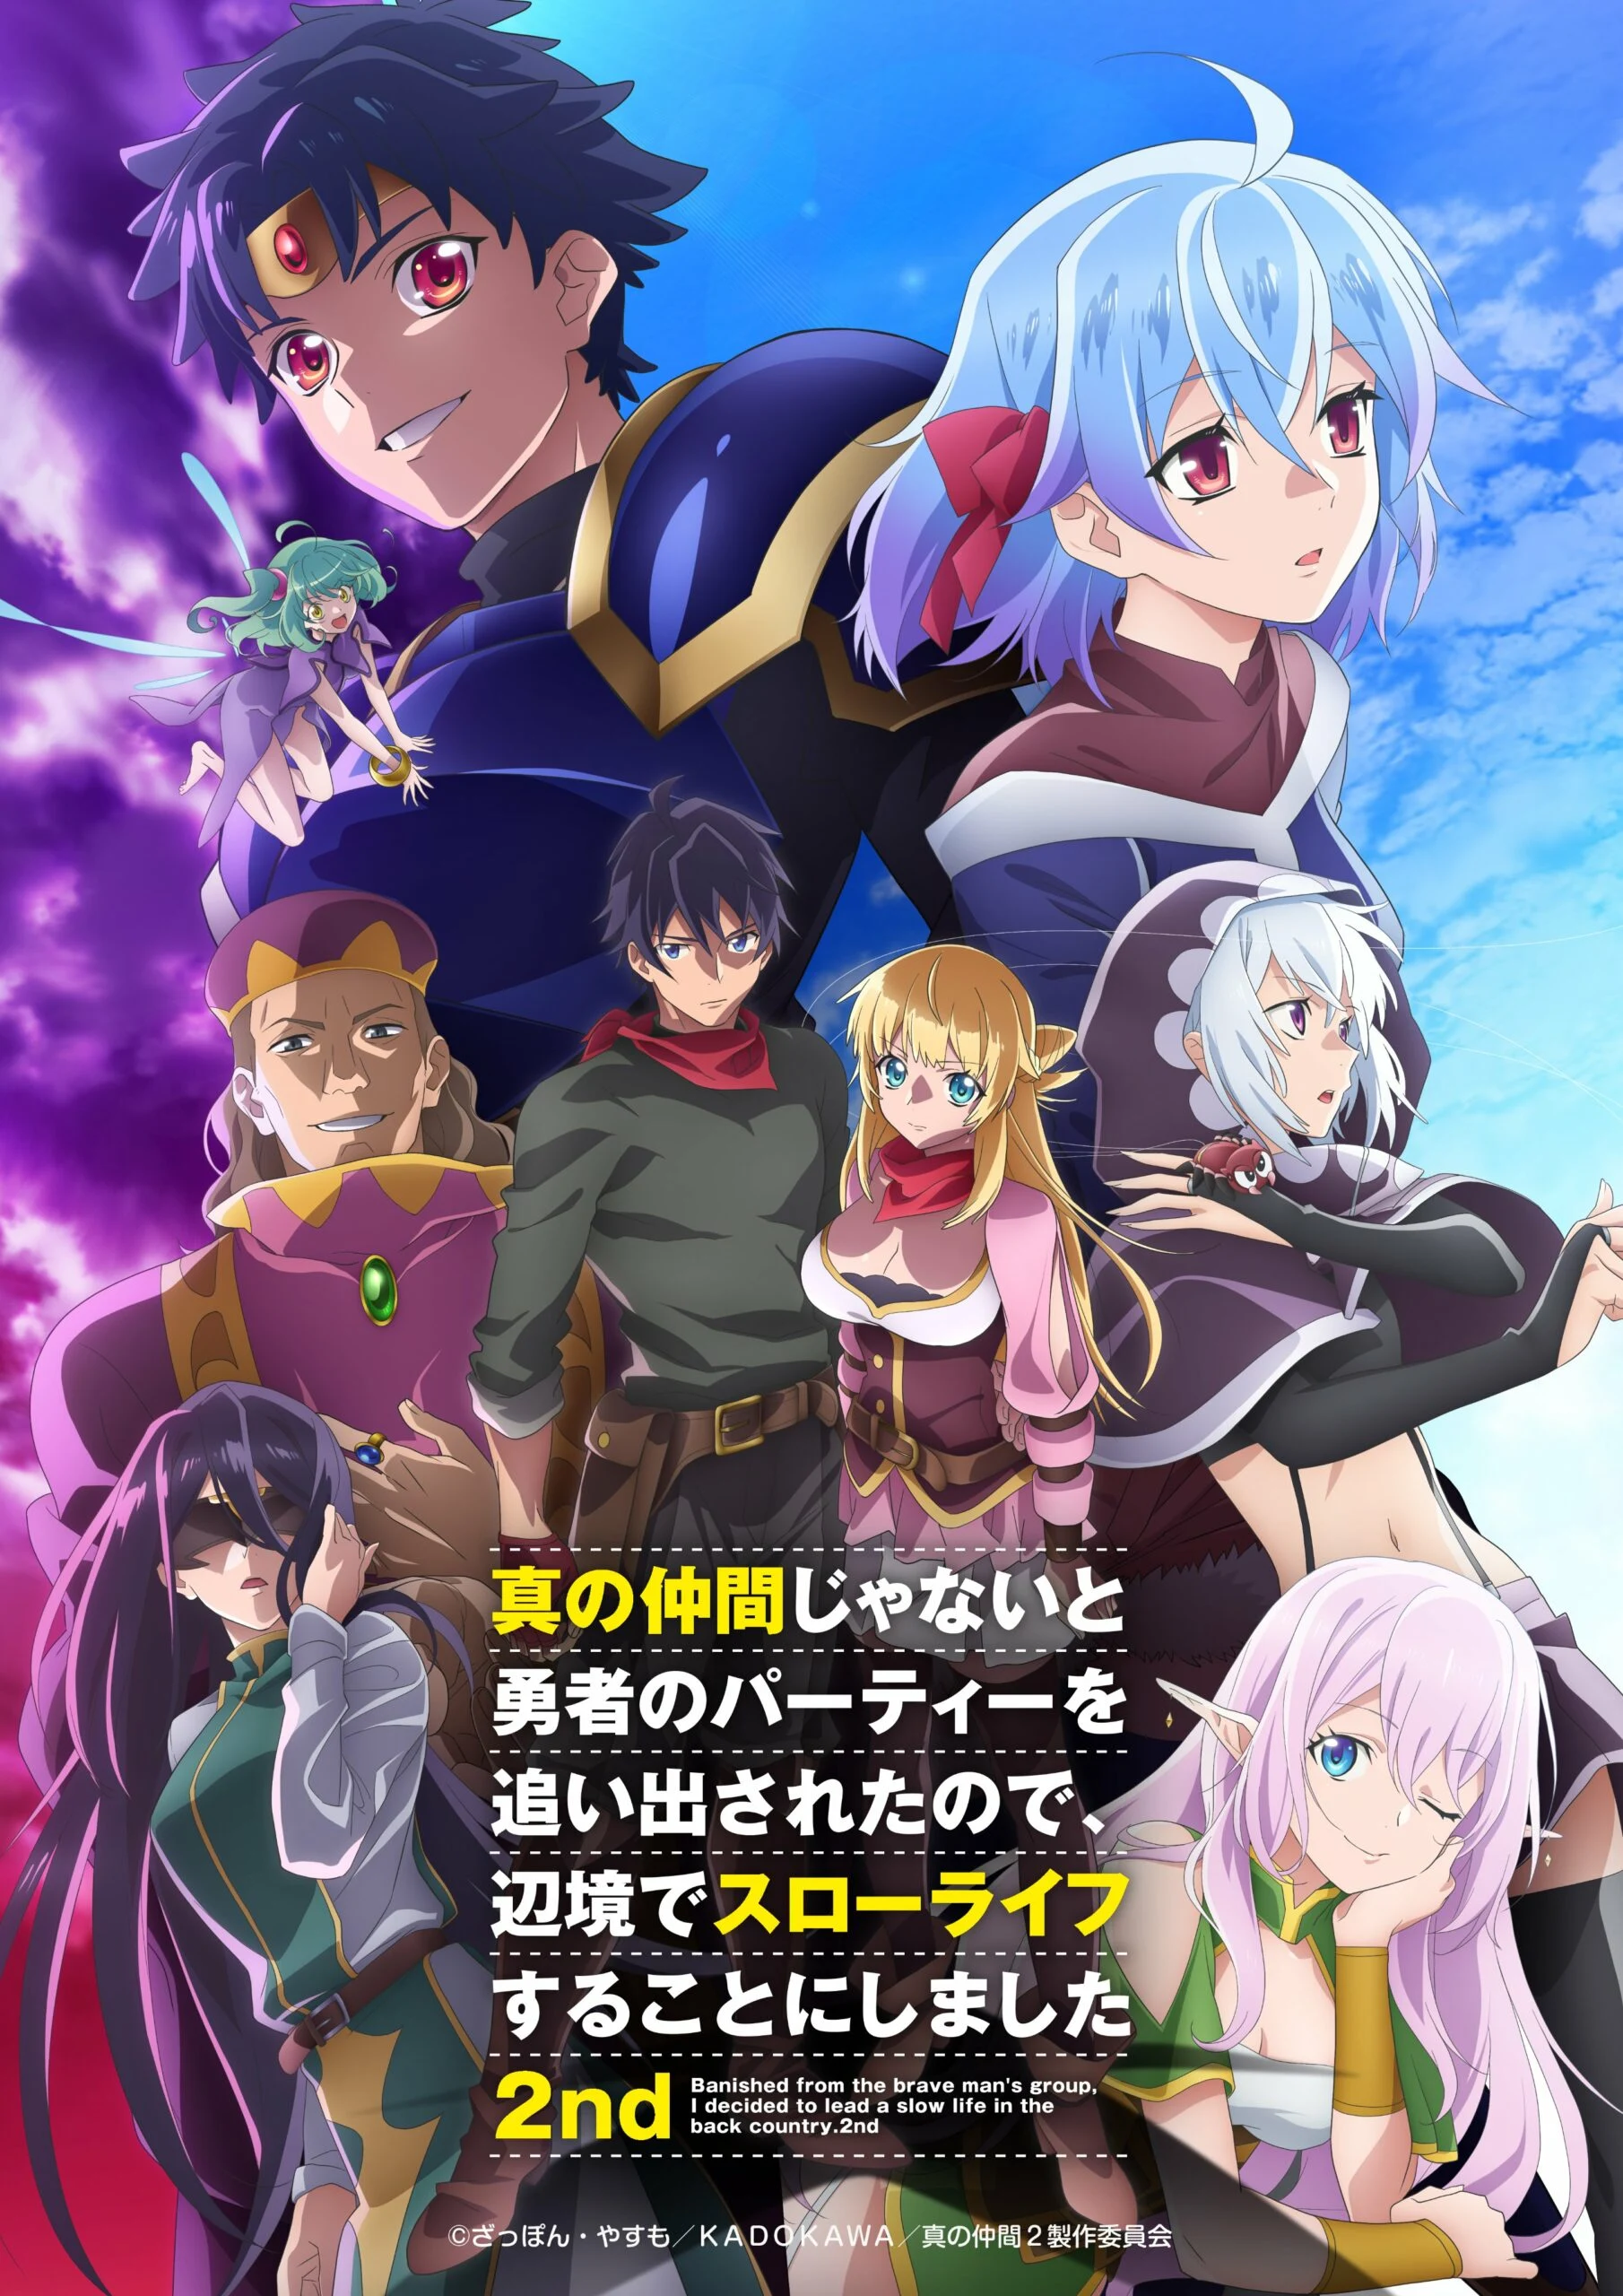 Crunchyroll confirma transmissão de Akuyaku Reijou Level 99 e mais 3 animes